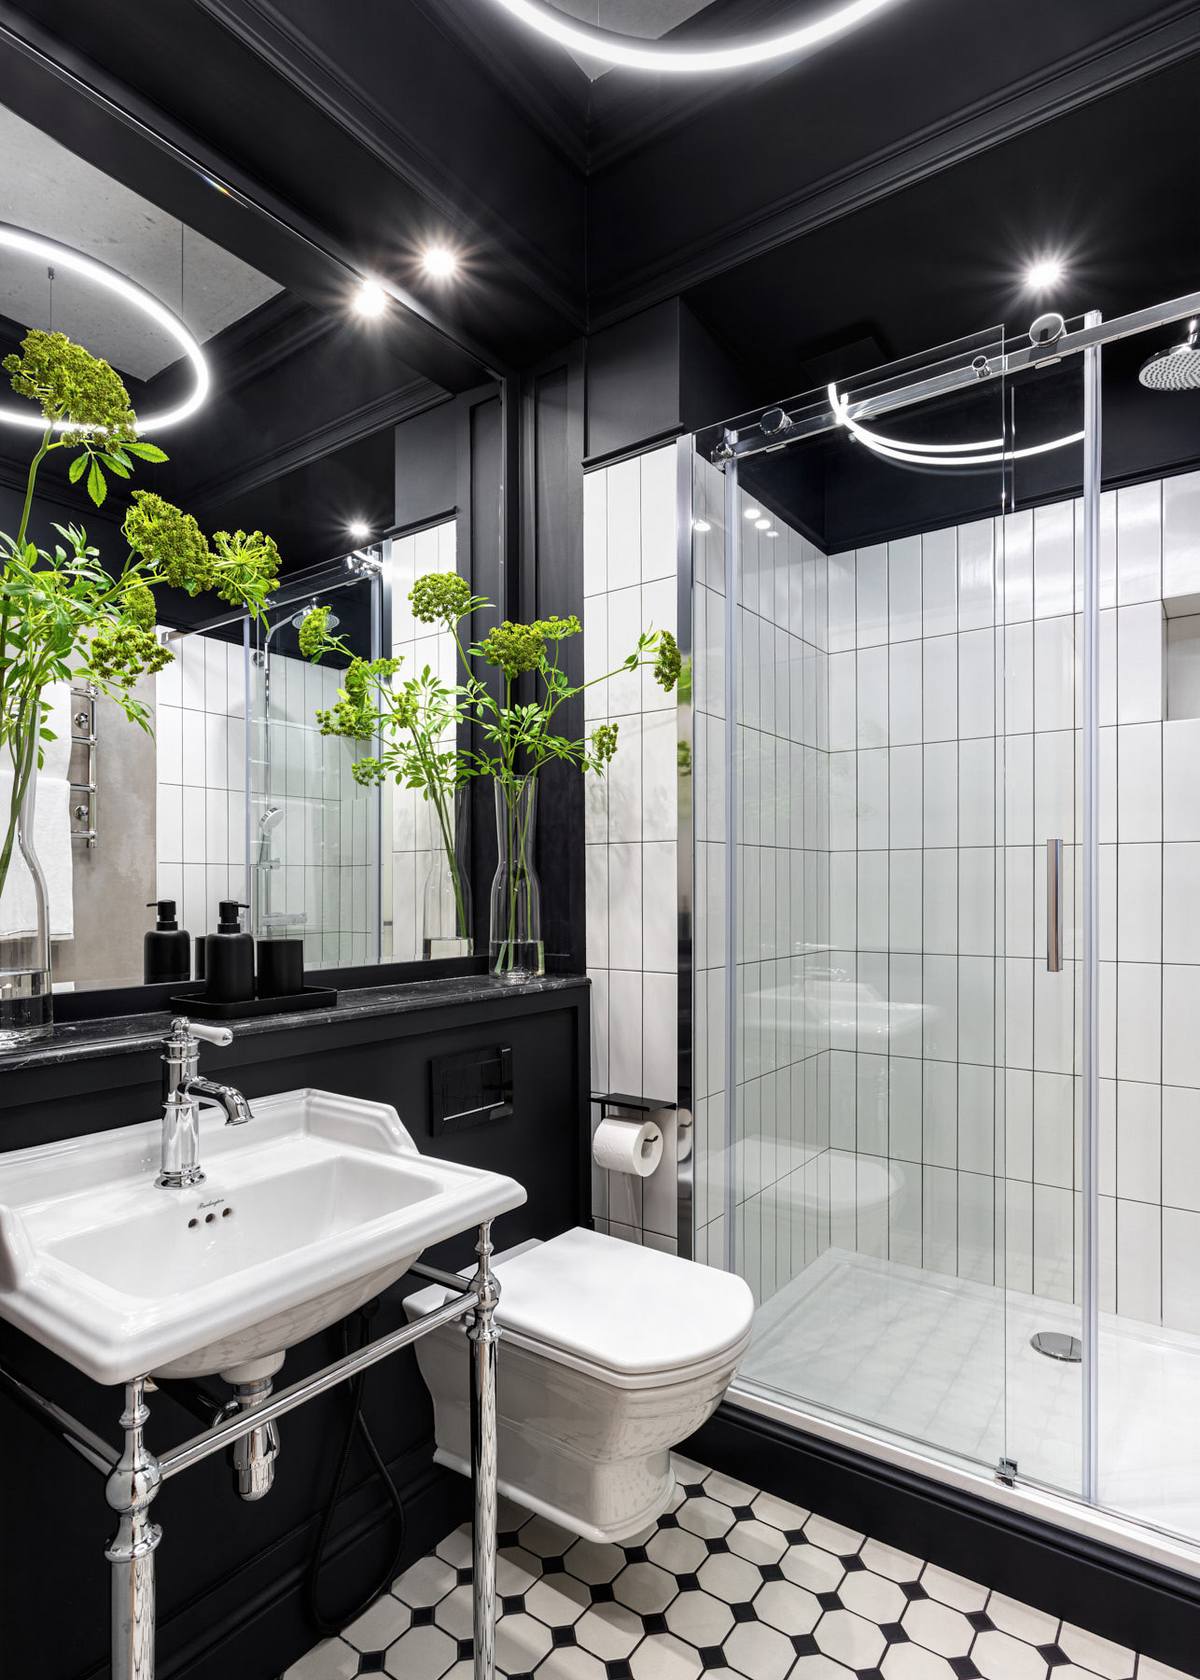 Bồn toilet gắn tường giúp giải phóng diện tích mặt sàn đồng thời vệ sinh dễ dàng hơn. Tấm gương to gần như ốp toàn bộ bức tường trên bồn rửa kết hợp với cửa kính trượt trong suốt phân vùng buồng tắm và nhà vệ sinh trông cực kỳ rộng rãi.